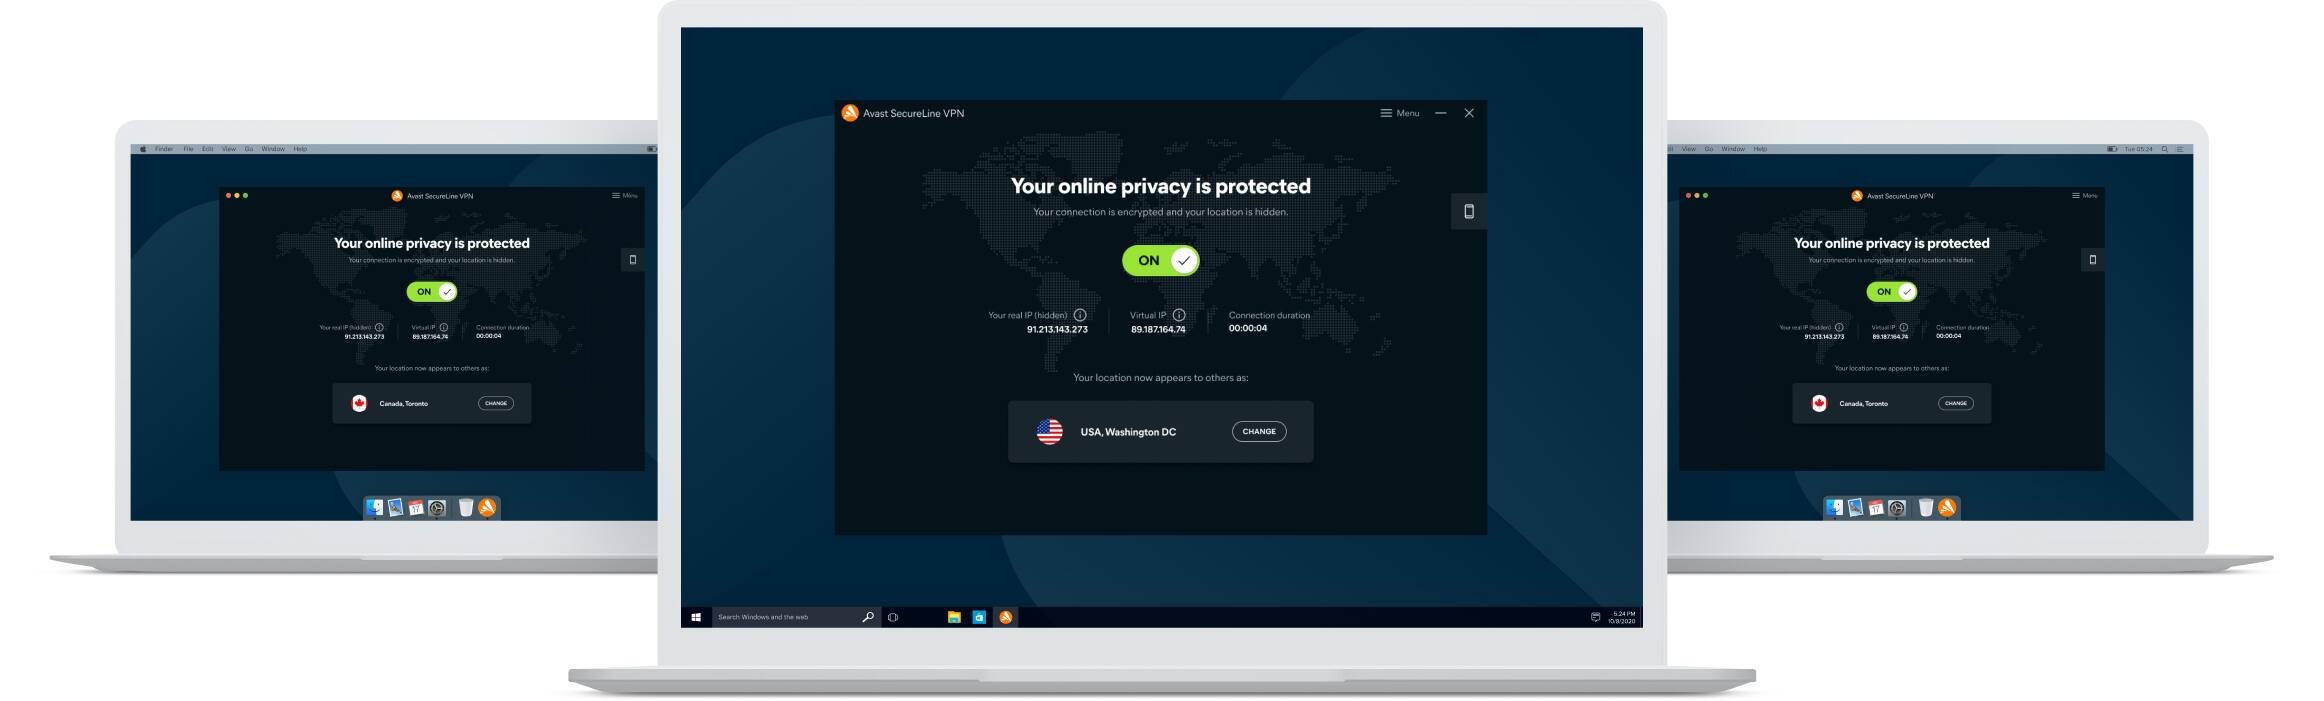 secureline vpn of avast 2015 download